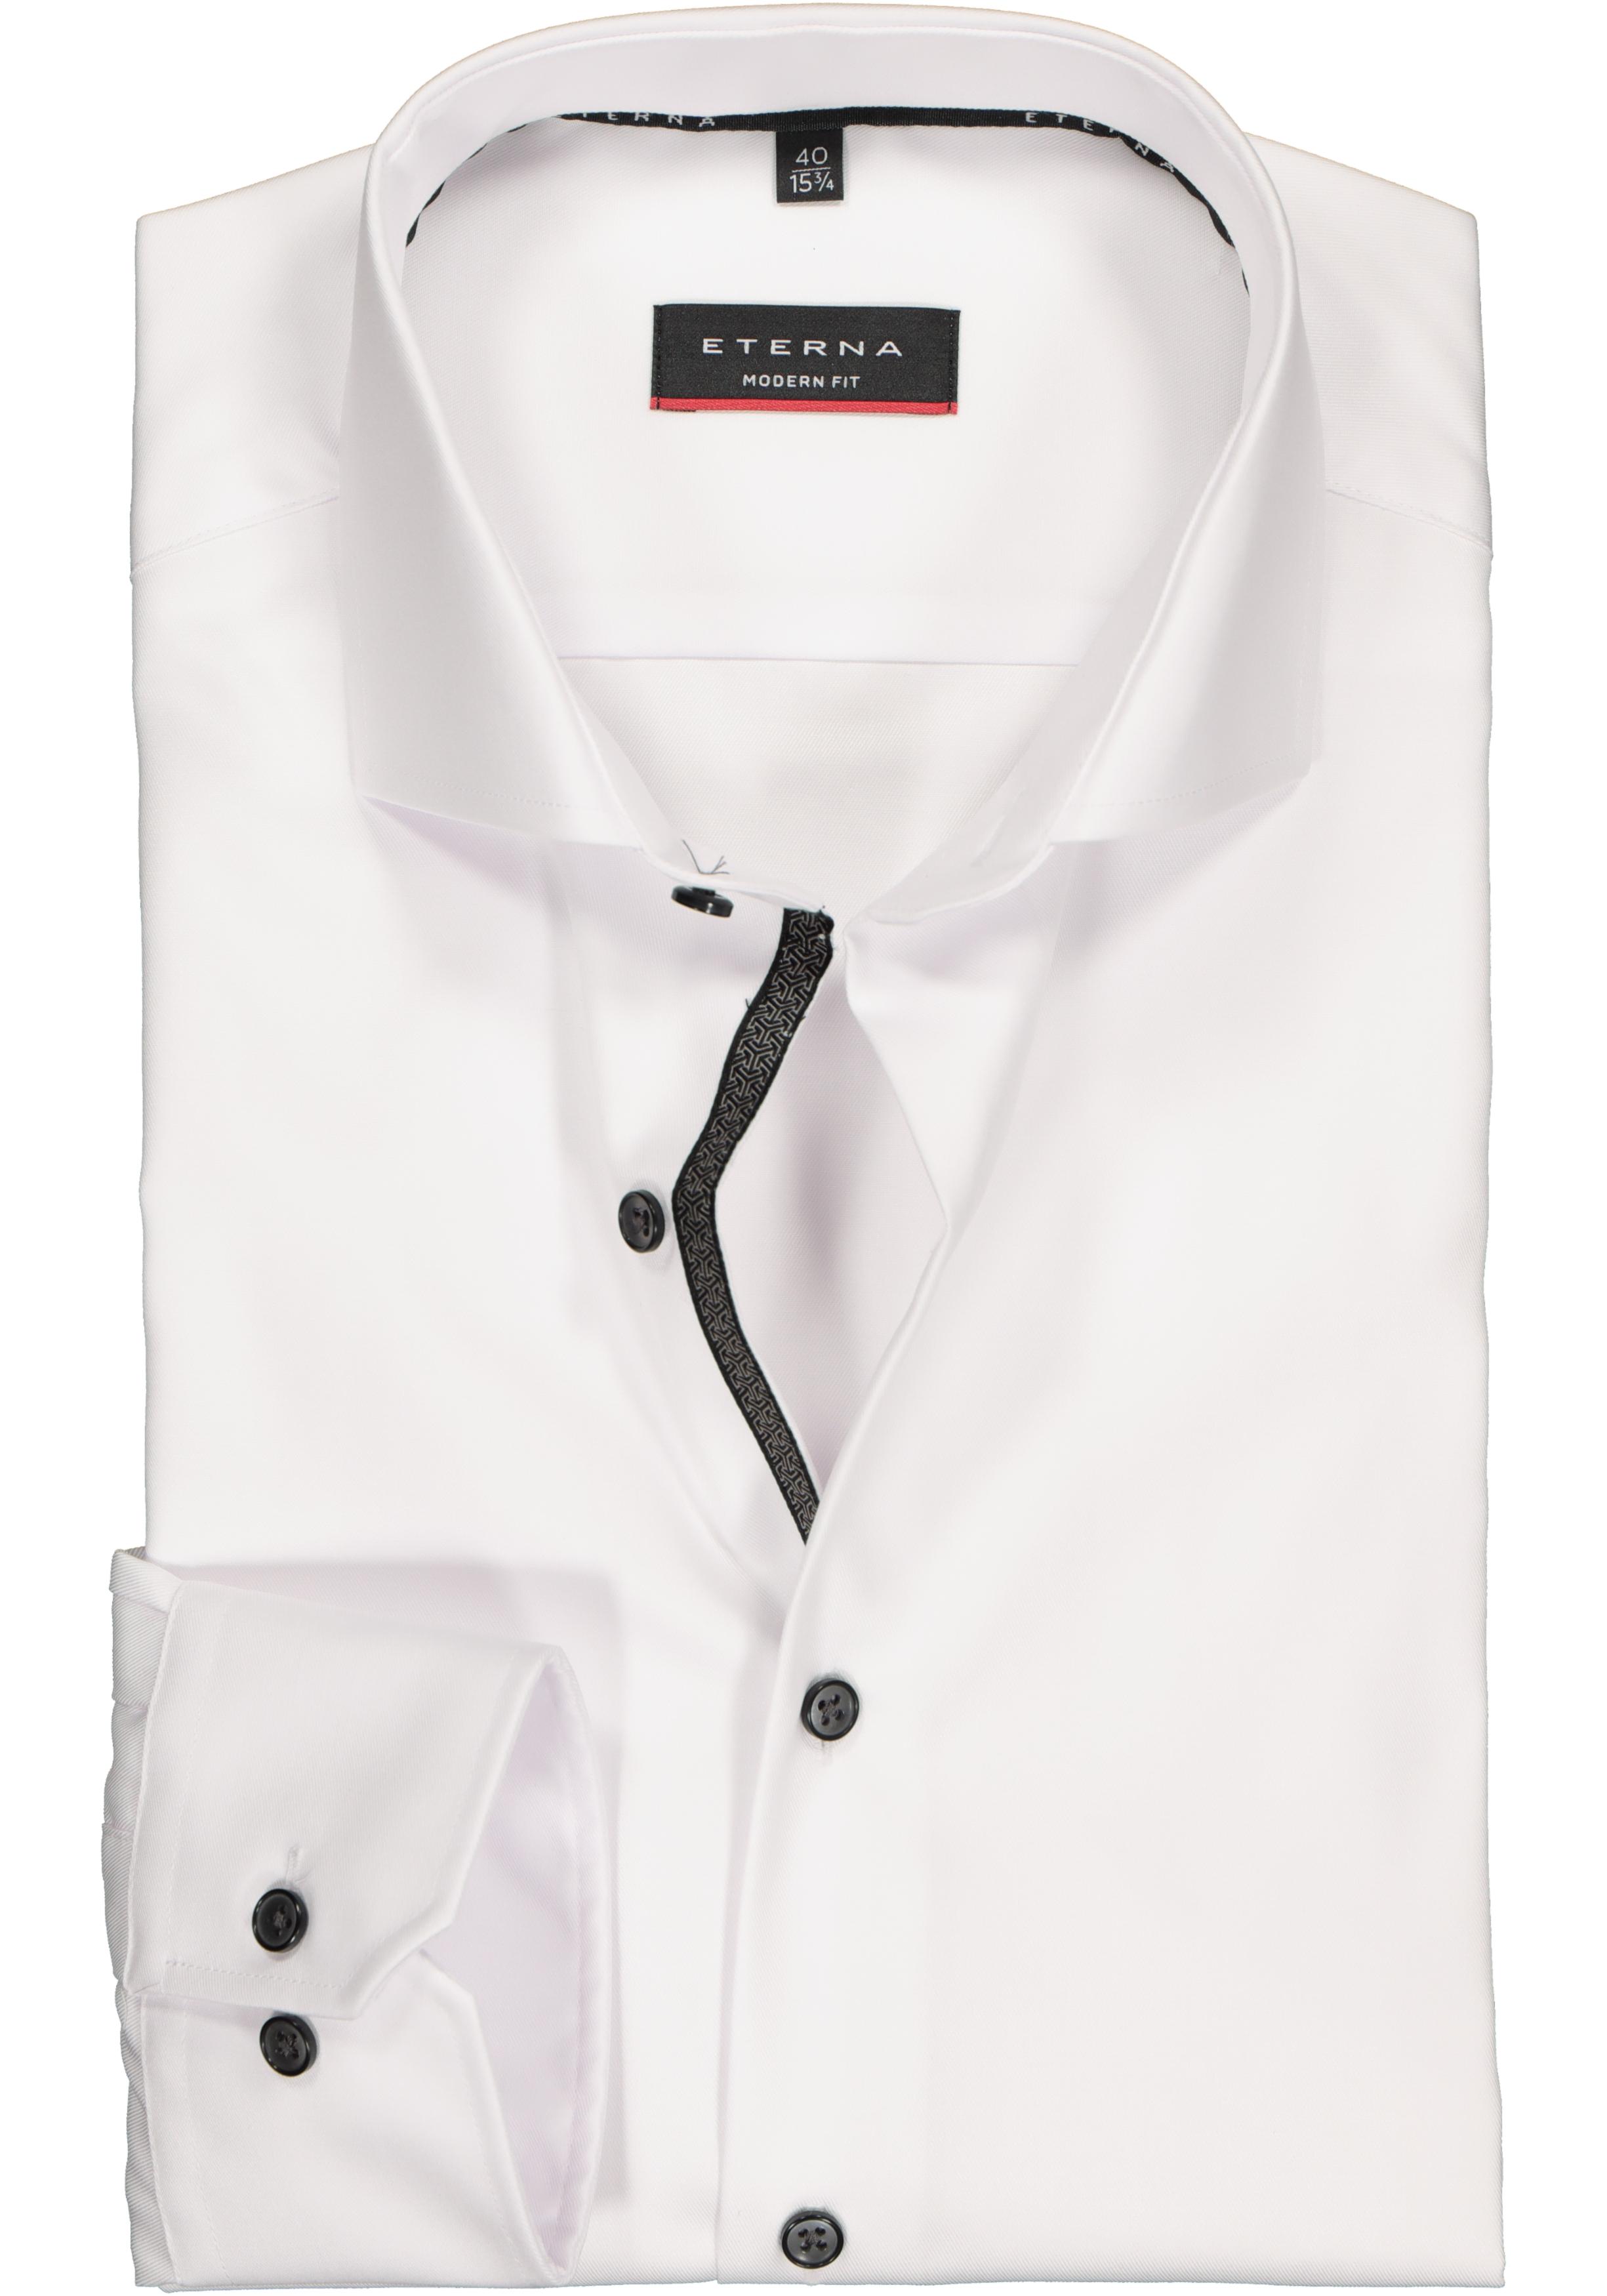 ETERNA modern fit overhemd, niet doorschijnend twill heren wit... - Shop nieuwste voorjaarsmode